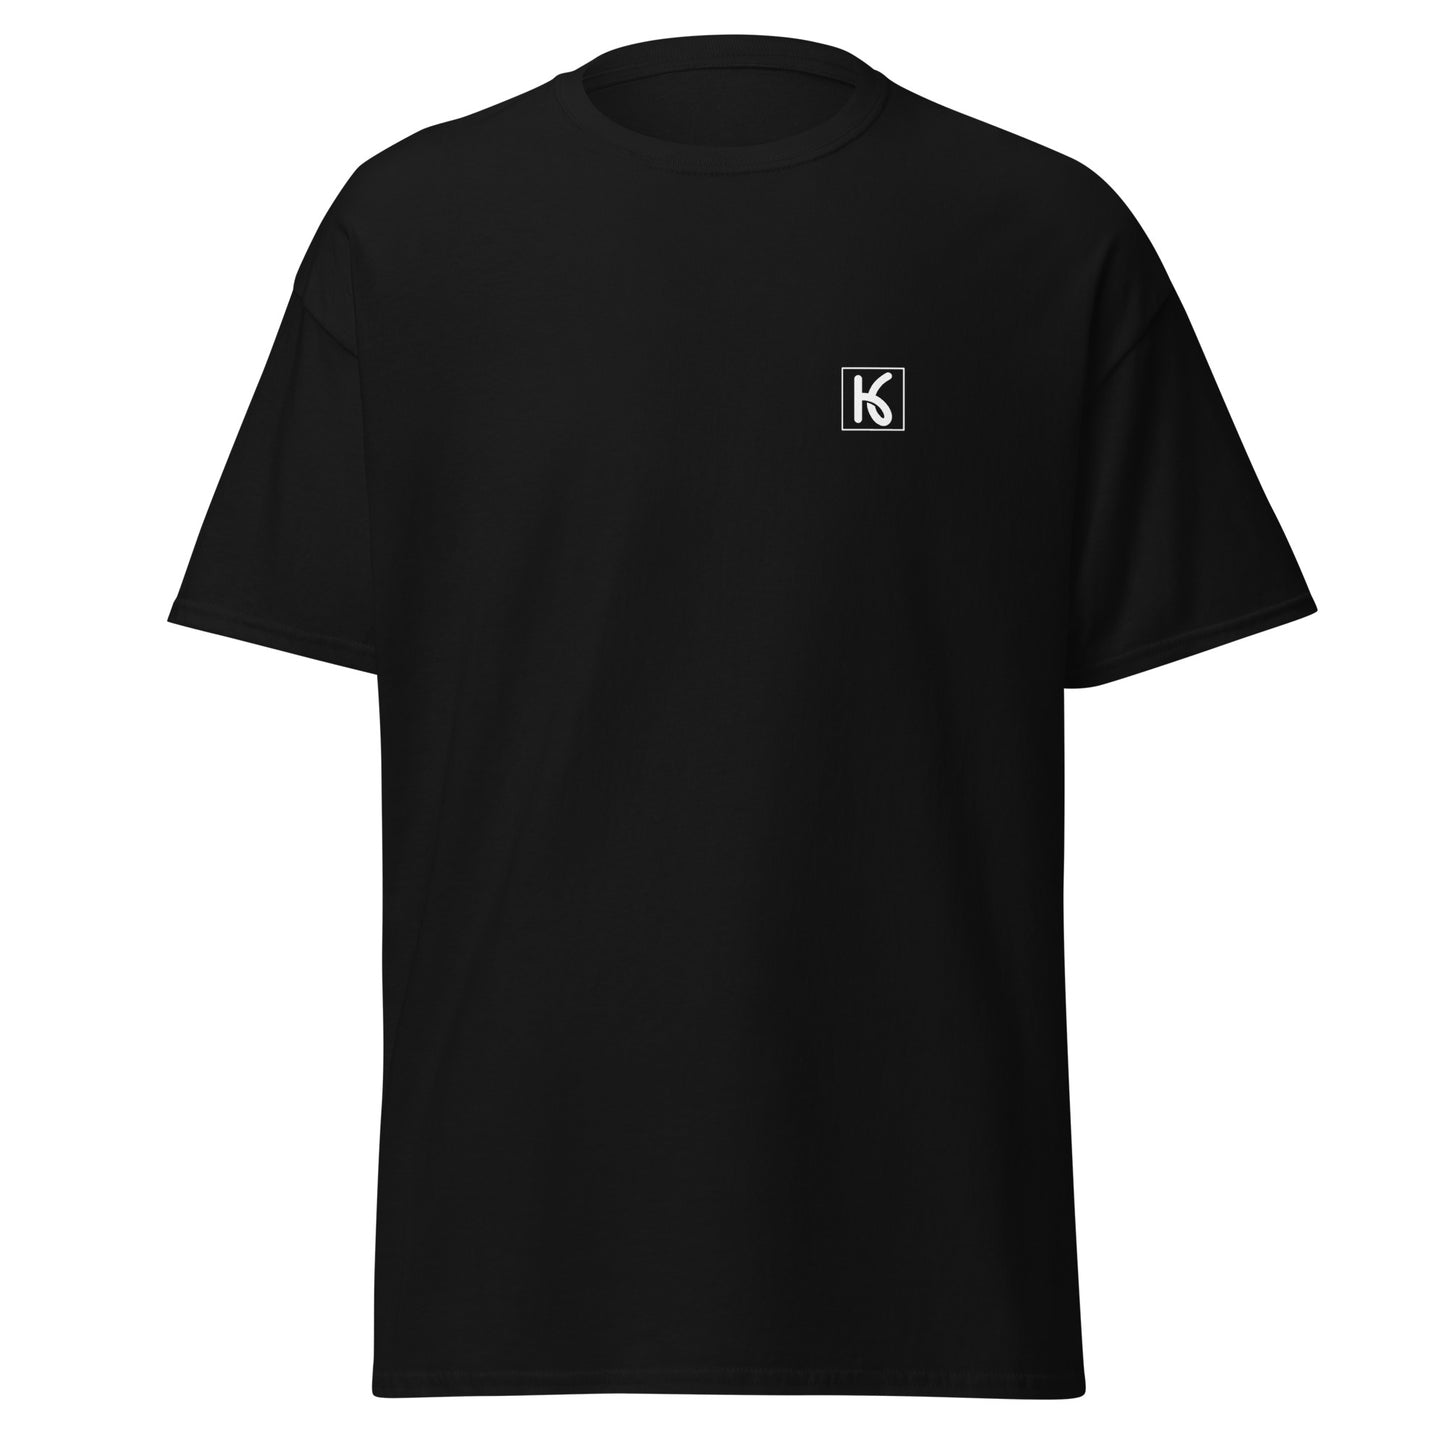 Camiseta clásica hombre Negra (Kiyo)